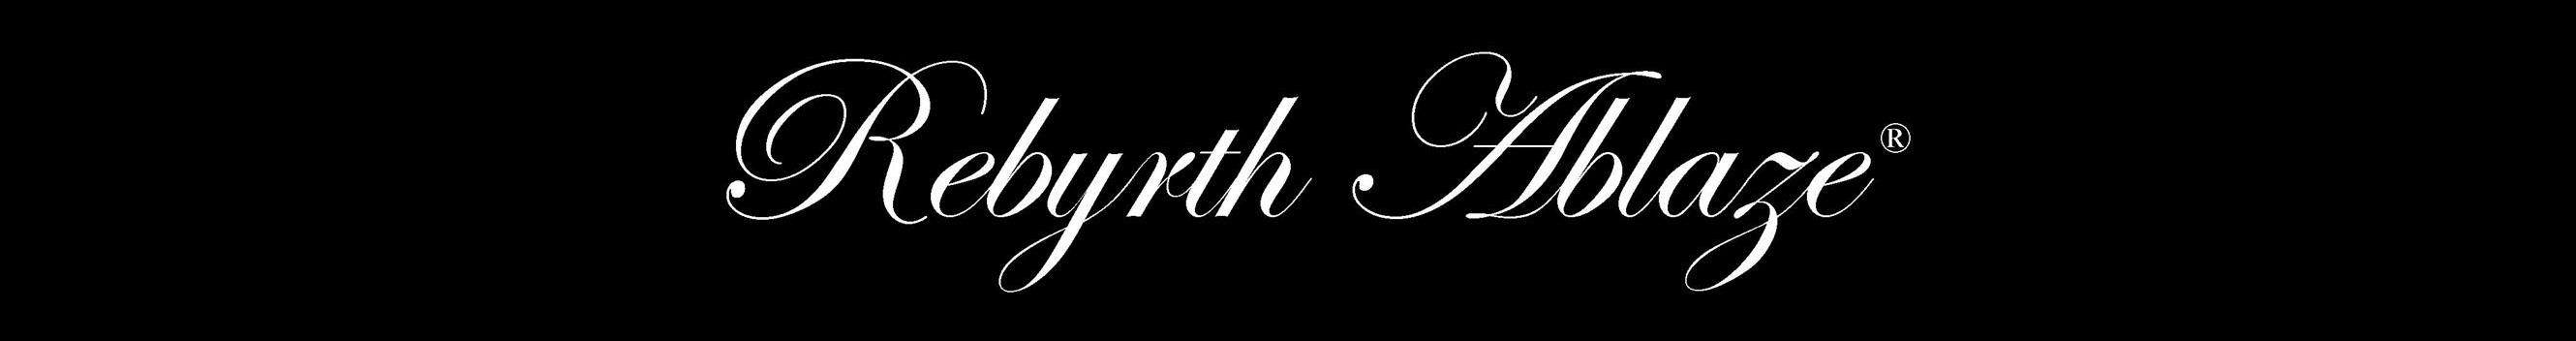 Profil-Banner von Rebyrth Ablaze®️